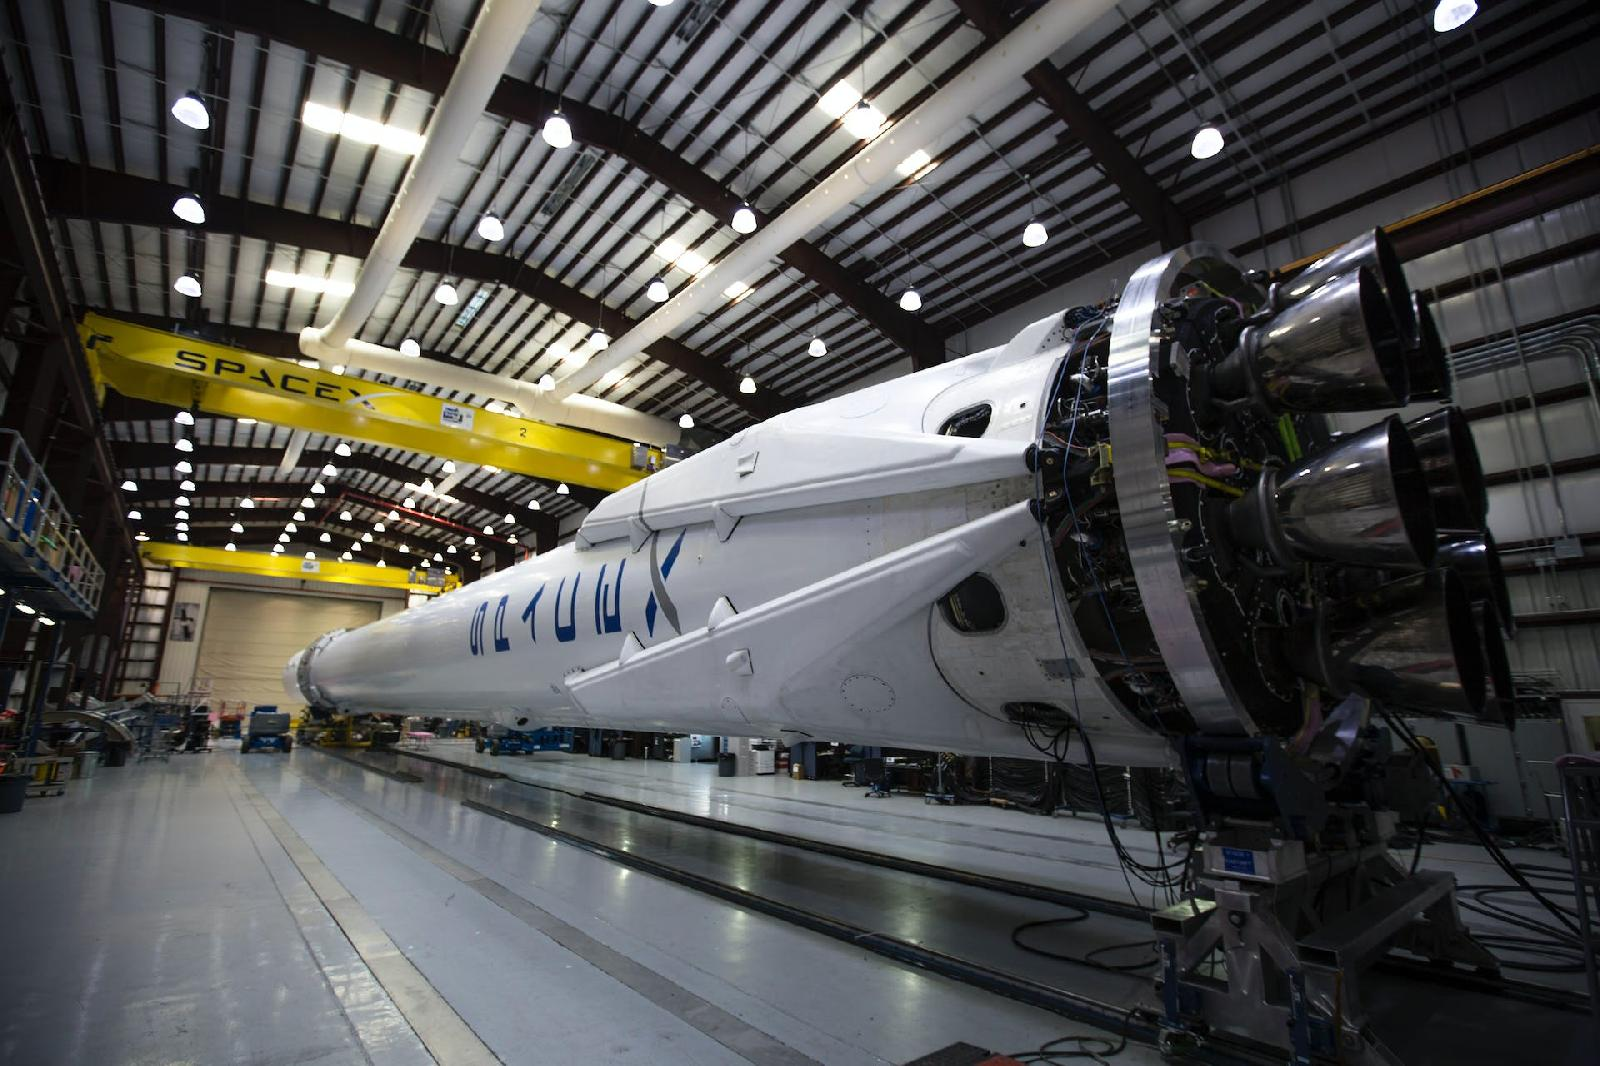 Spacex : zoom sur l’actualite economique du geant de l’aerospatial